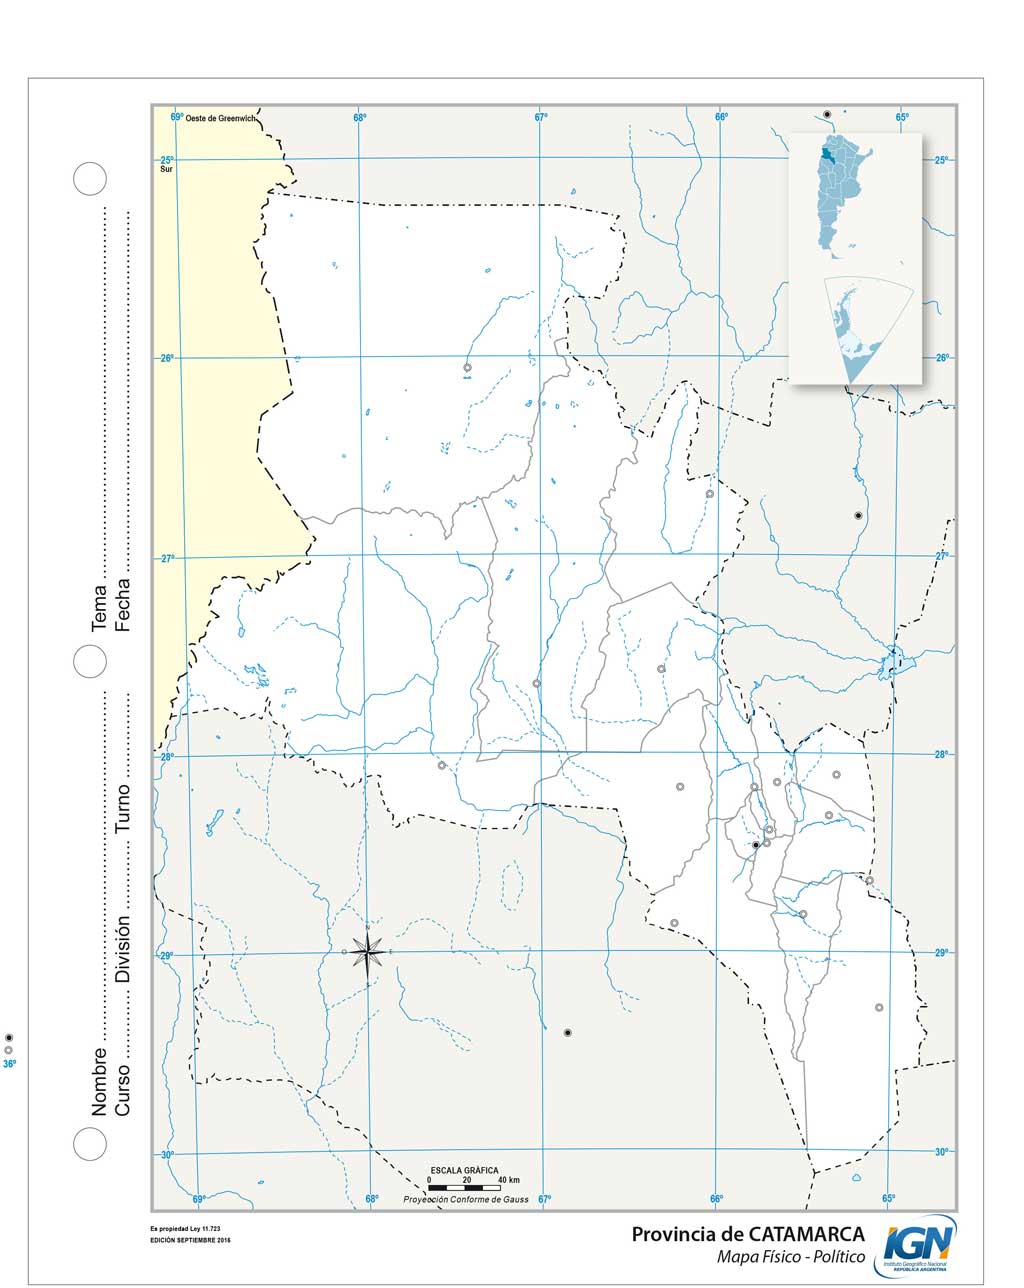 Mapas de la Provincia de Catamarca